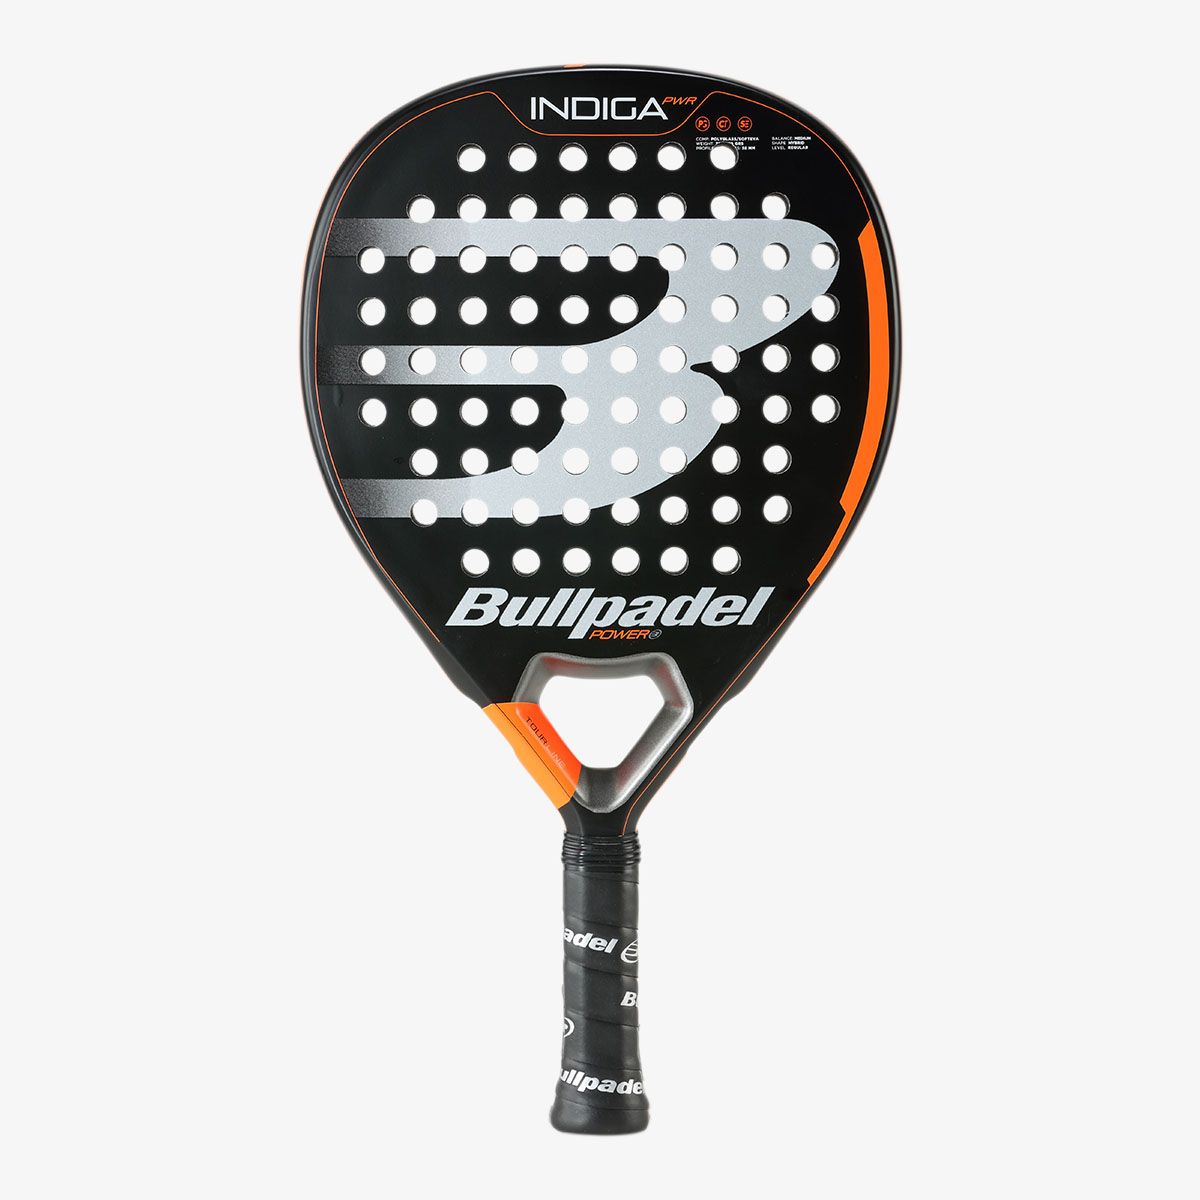  (463152) - Tennisservice Schilde